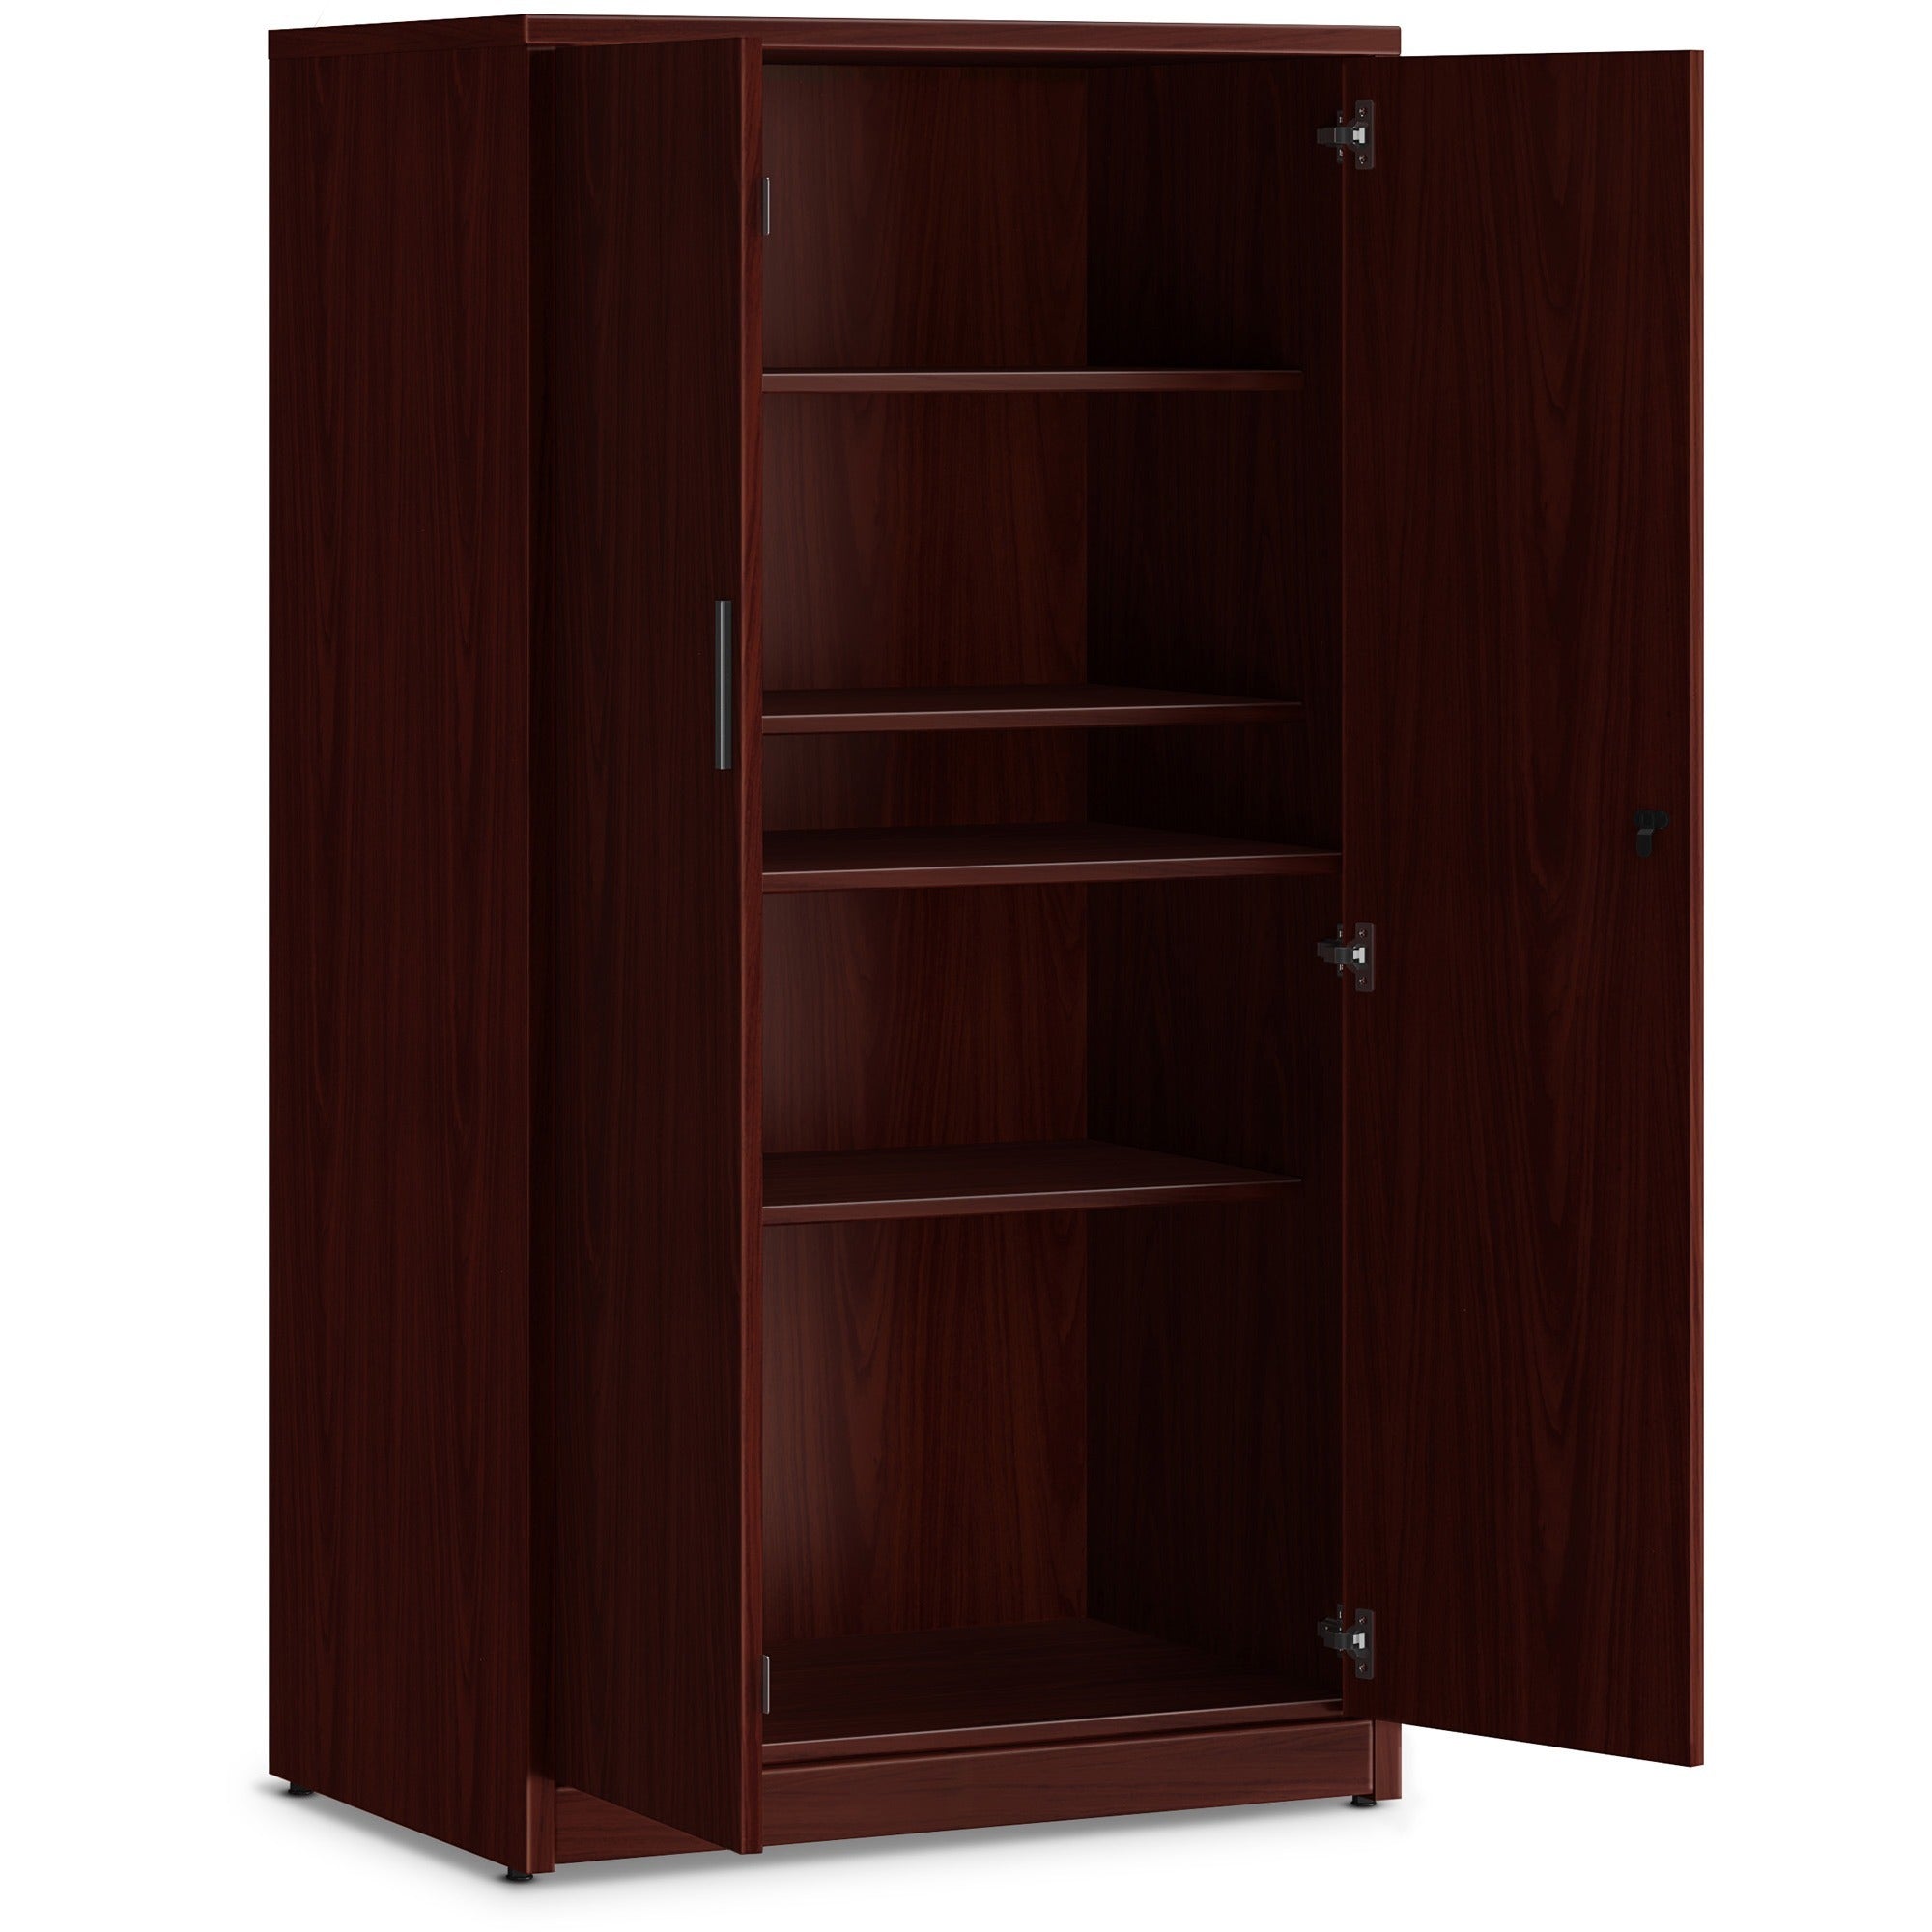 hon-10500-series-mahogany-laminate-office-desking-36-x-24666-5-shelves-3-adjustable-shelfves-finish-thermofused-laminate-tfl-mahogany-laminate_hon105299nn - 2